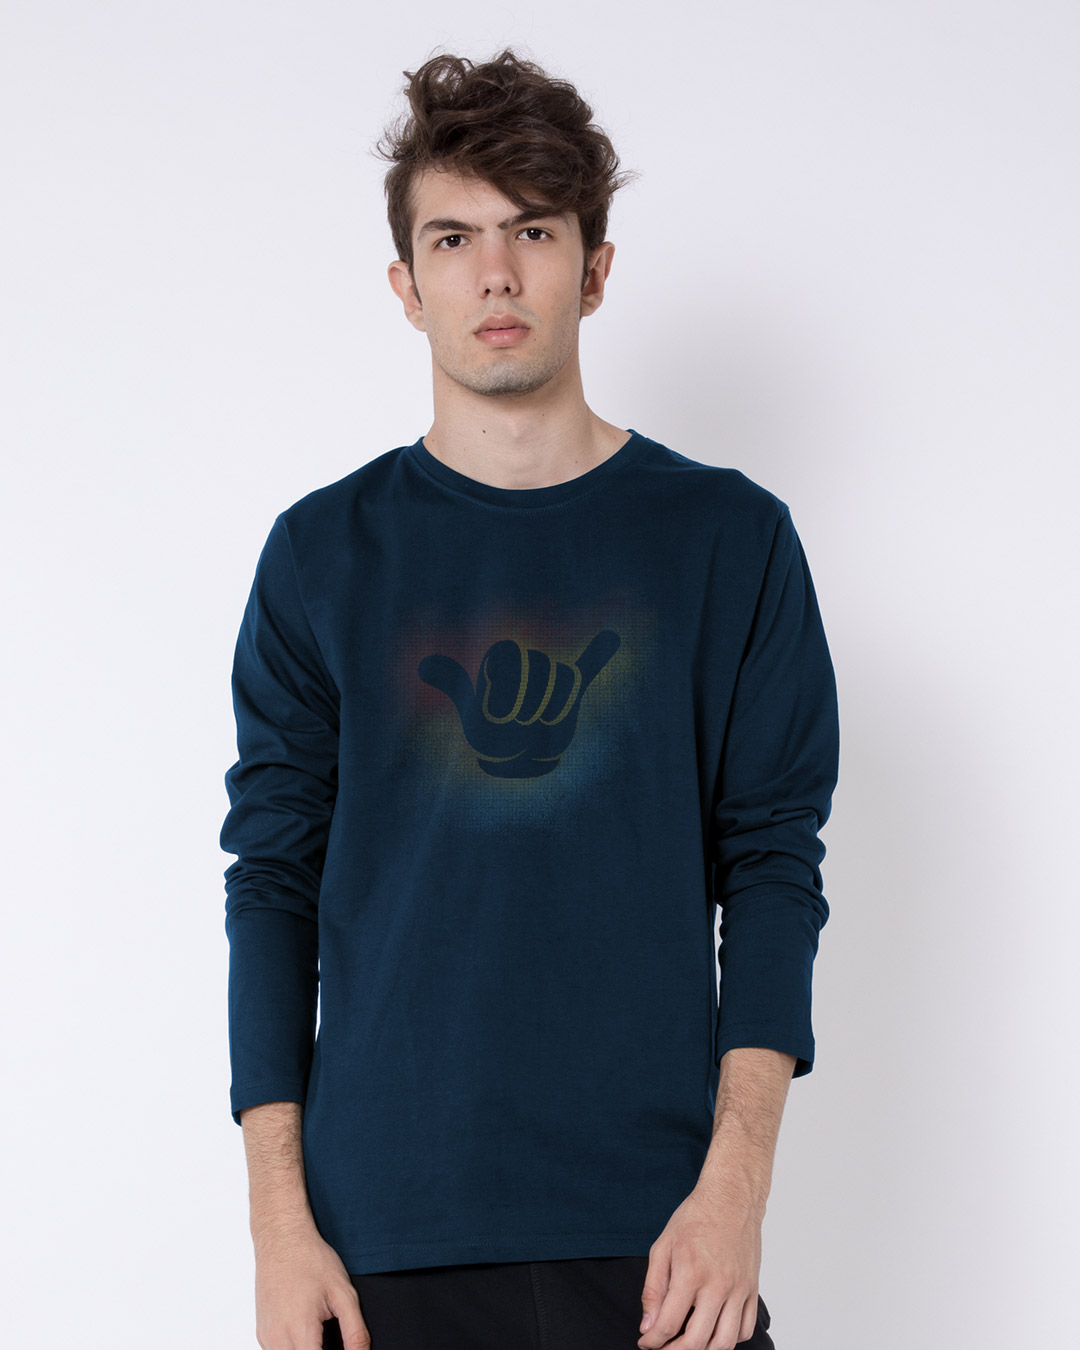 Buy Hang Loose Full Sleeve T-Shirt Online at Bewakoof